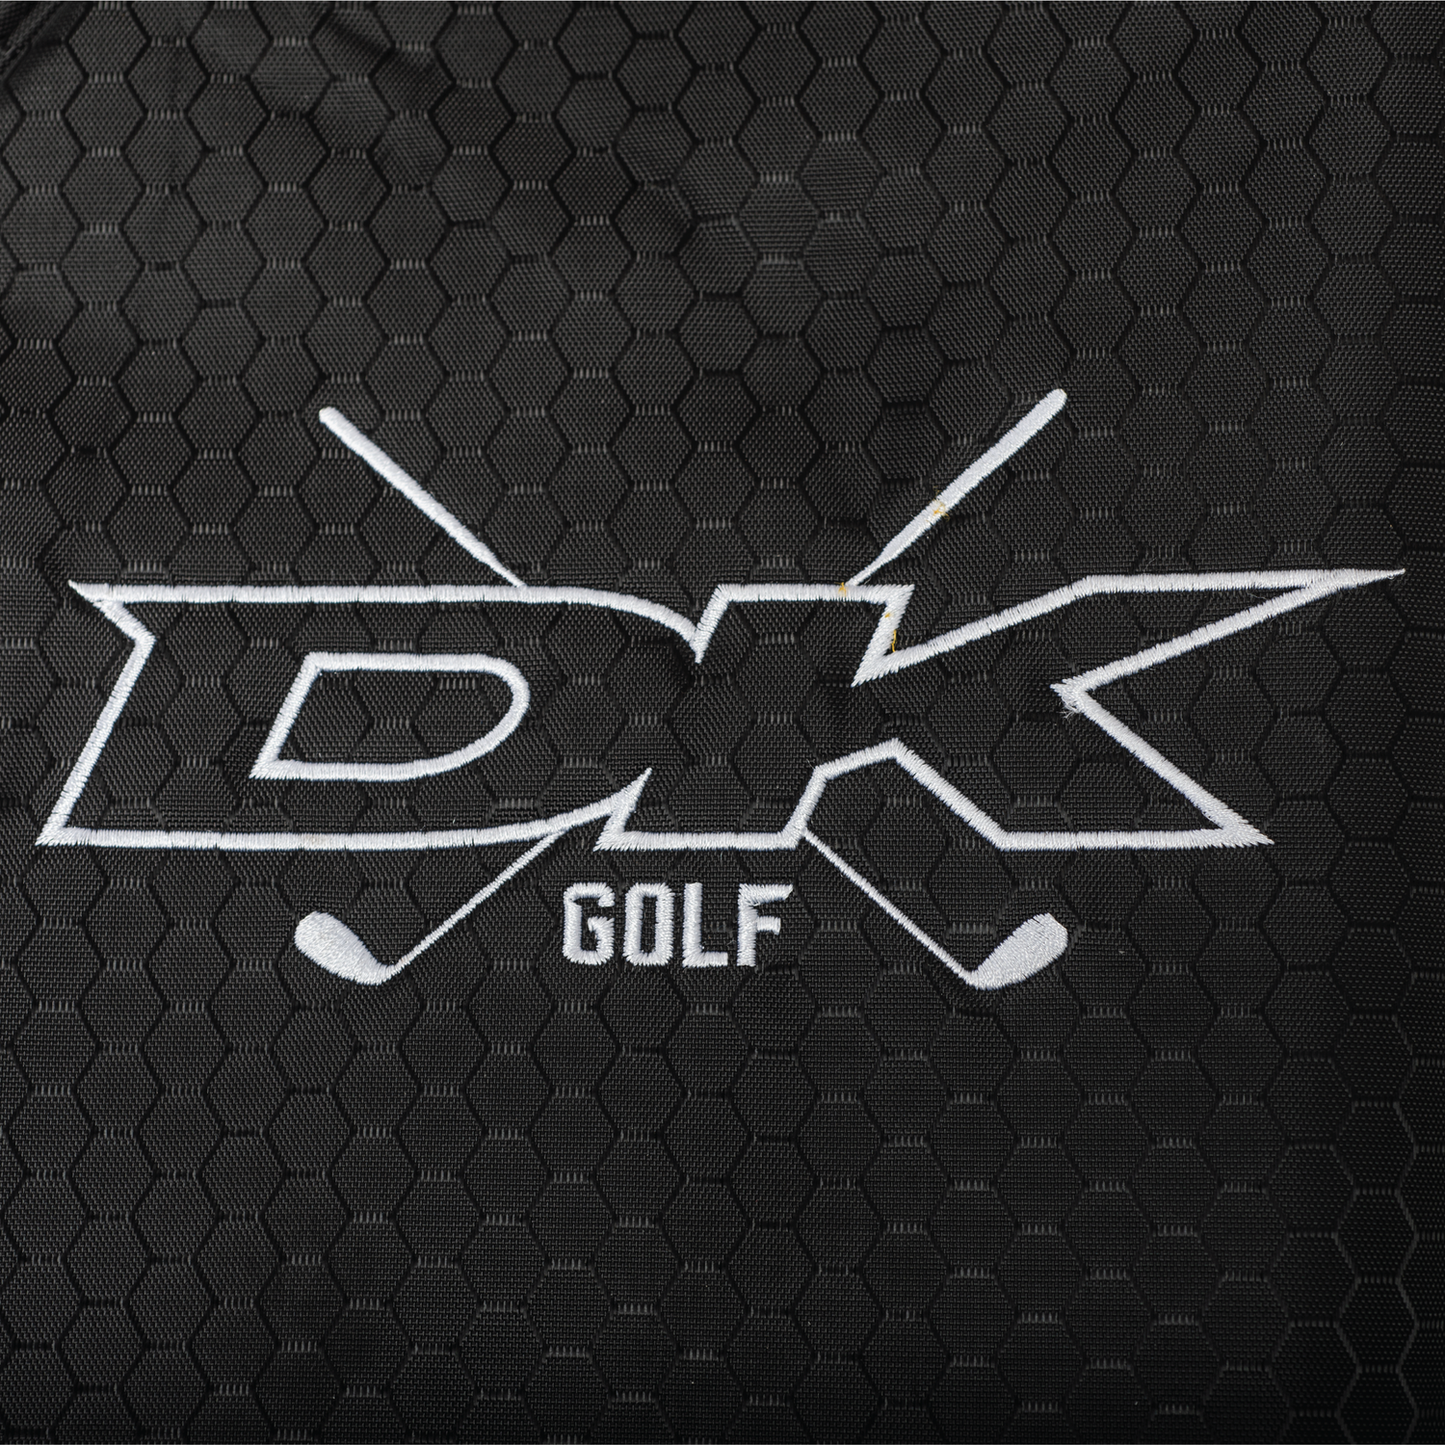 DK Golf Bike Bag